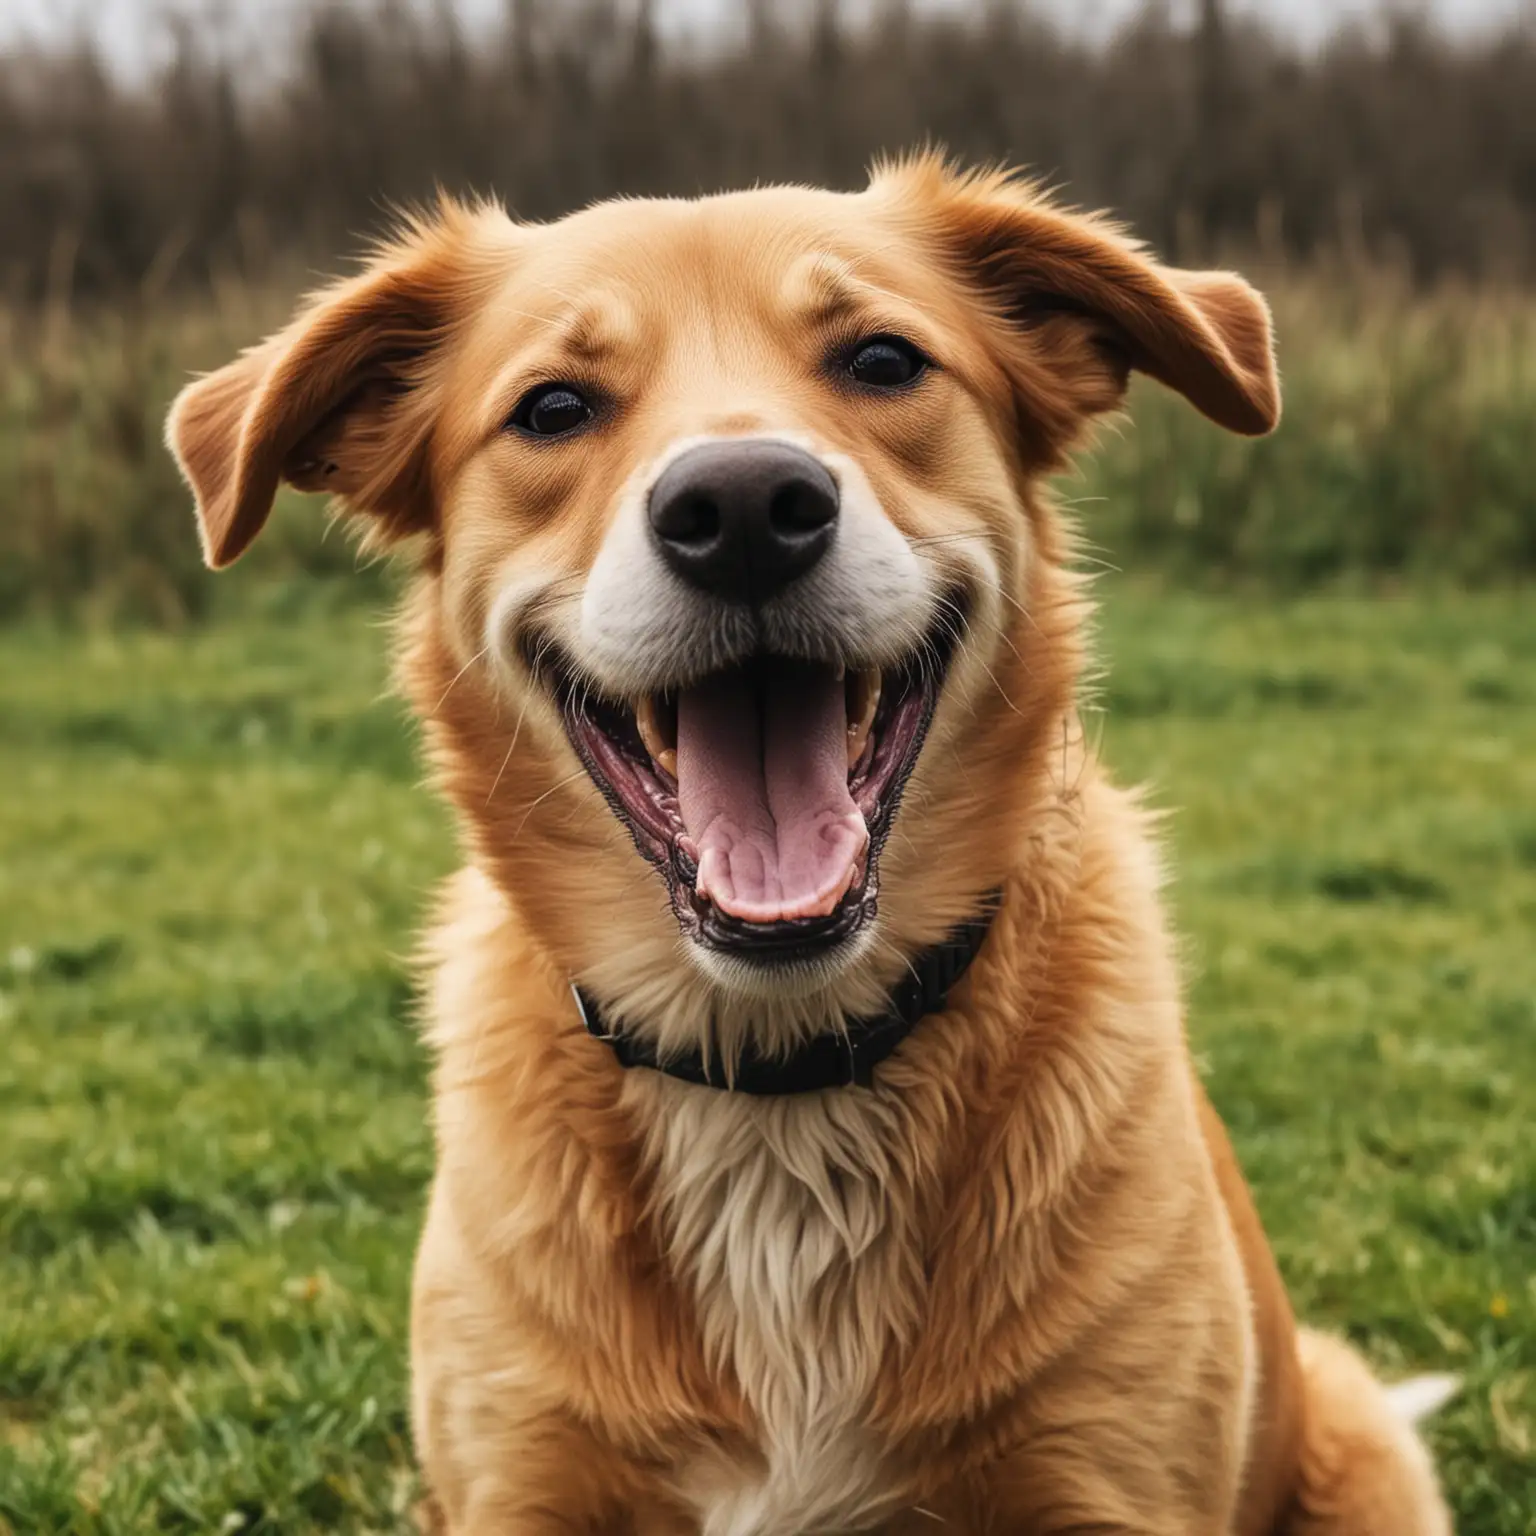 a happy dog